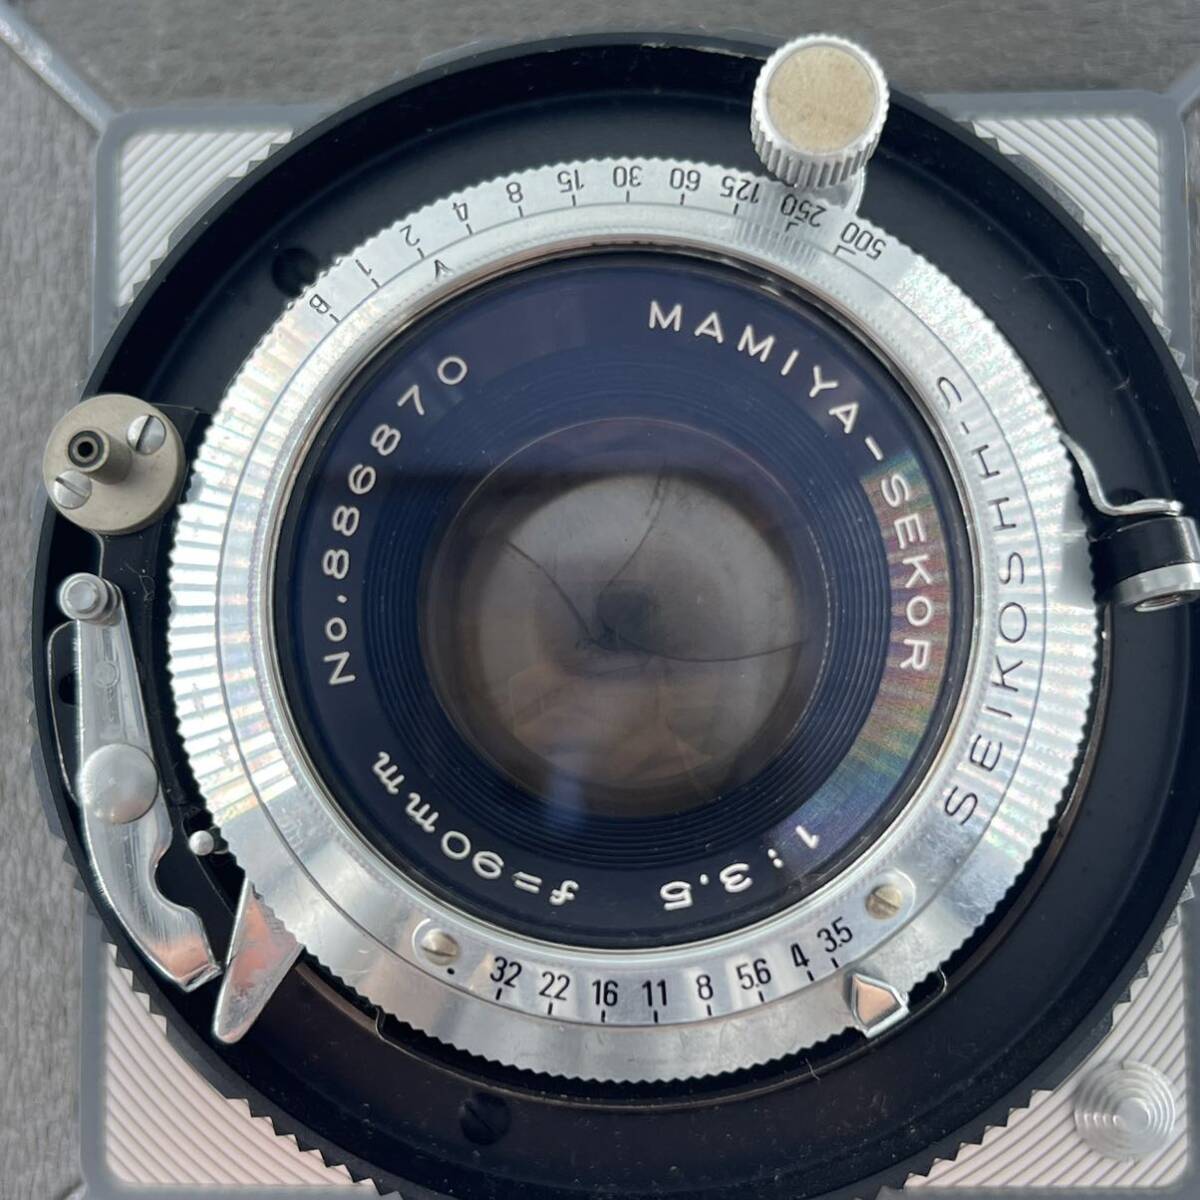 G4j Mamiya マミヤ 中判カメラ レンズ MAMIYA-SEKOR 1:3.5 f=90mm 6×9 フィルムカメラ の画像3